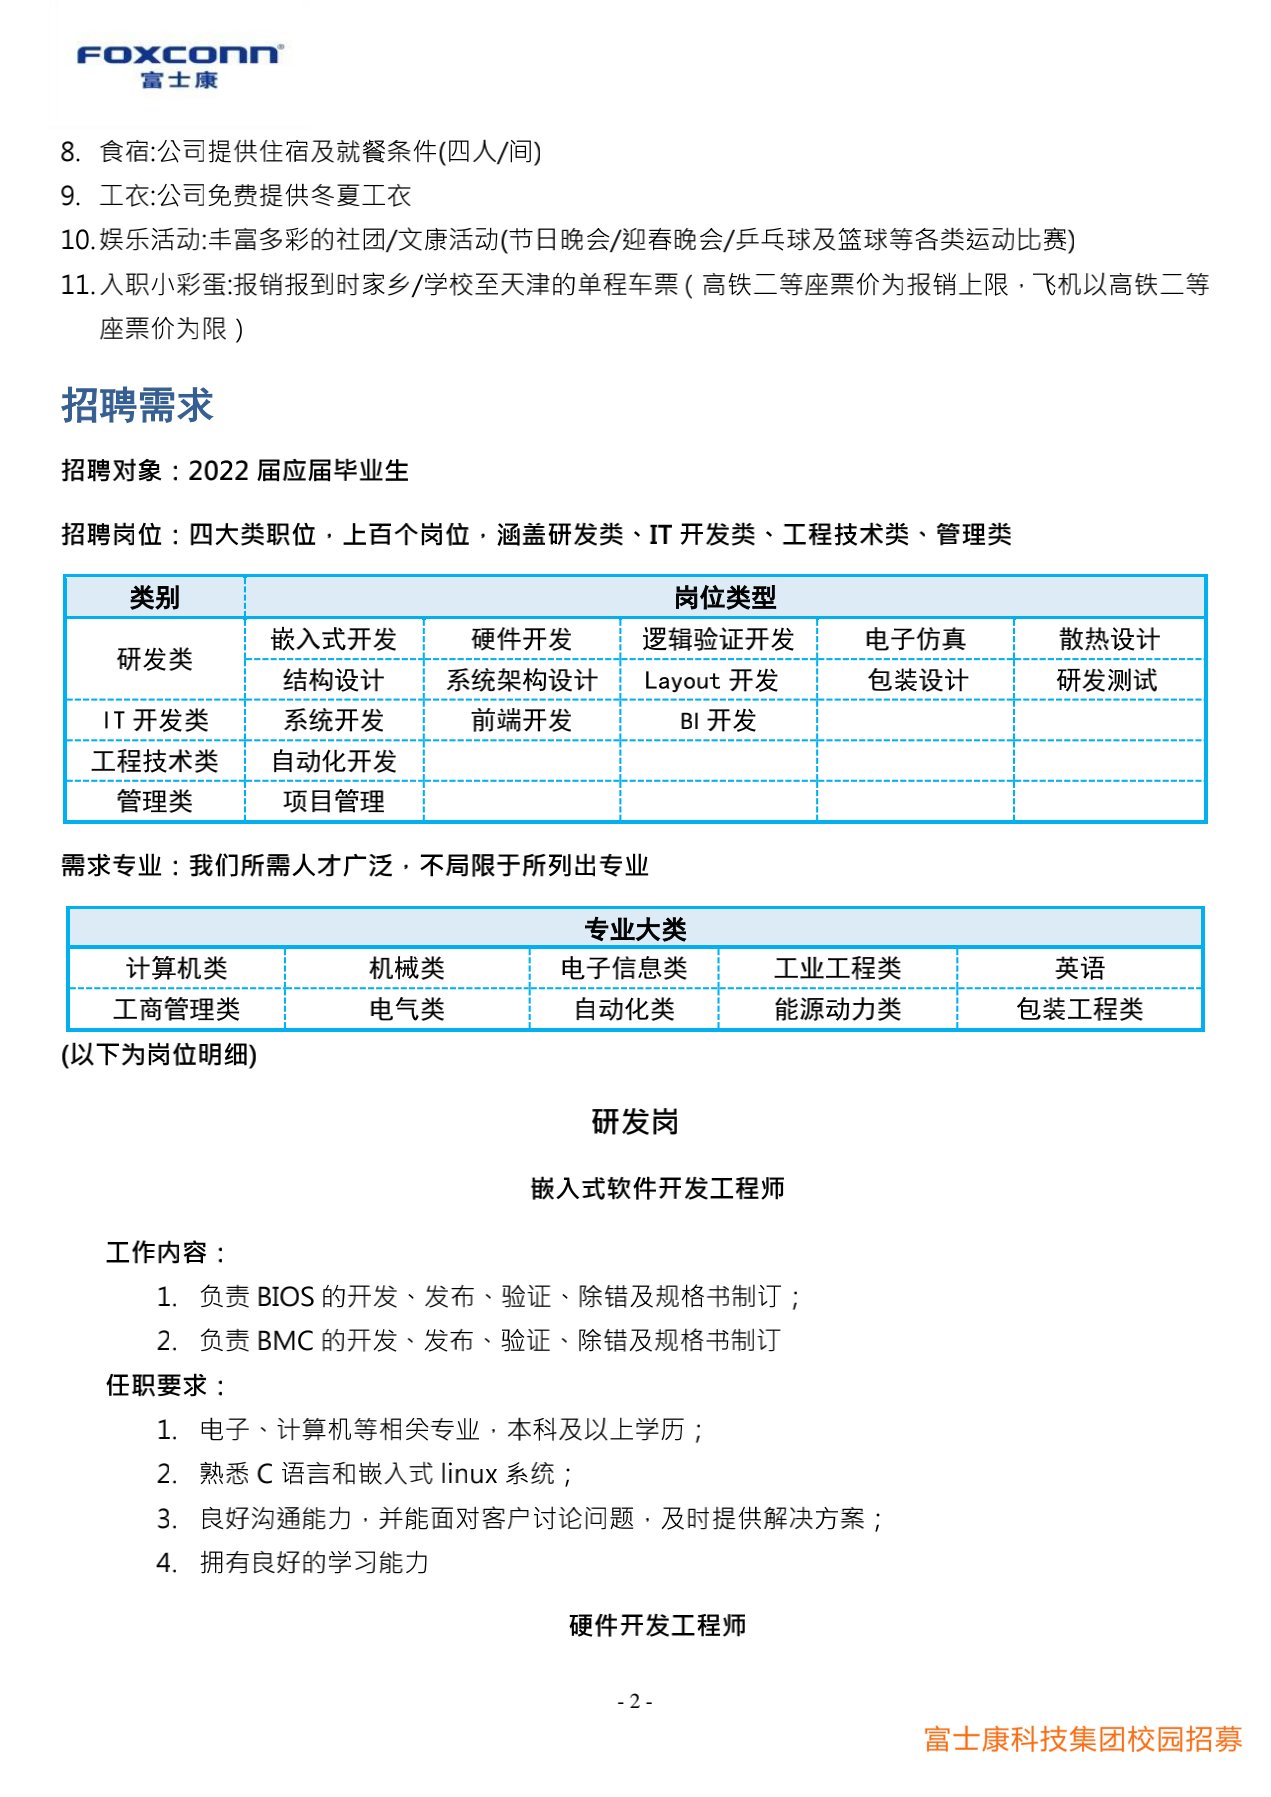 富士康科技集团天津科技园2022届校园招聘简章20210915(研发)_2.jpg